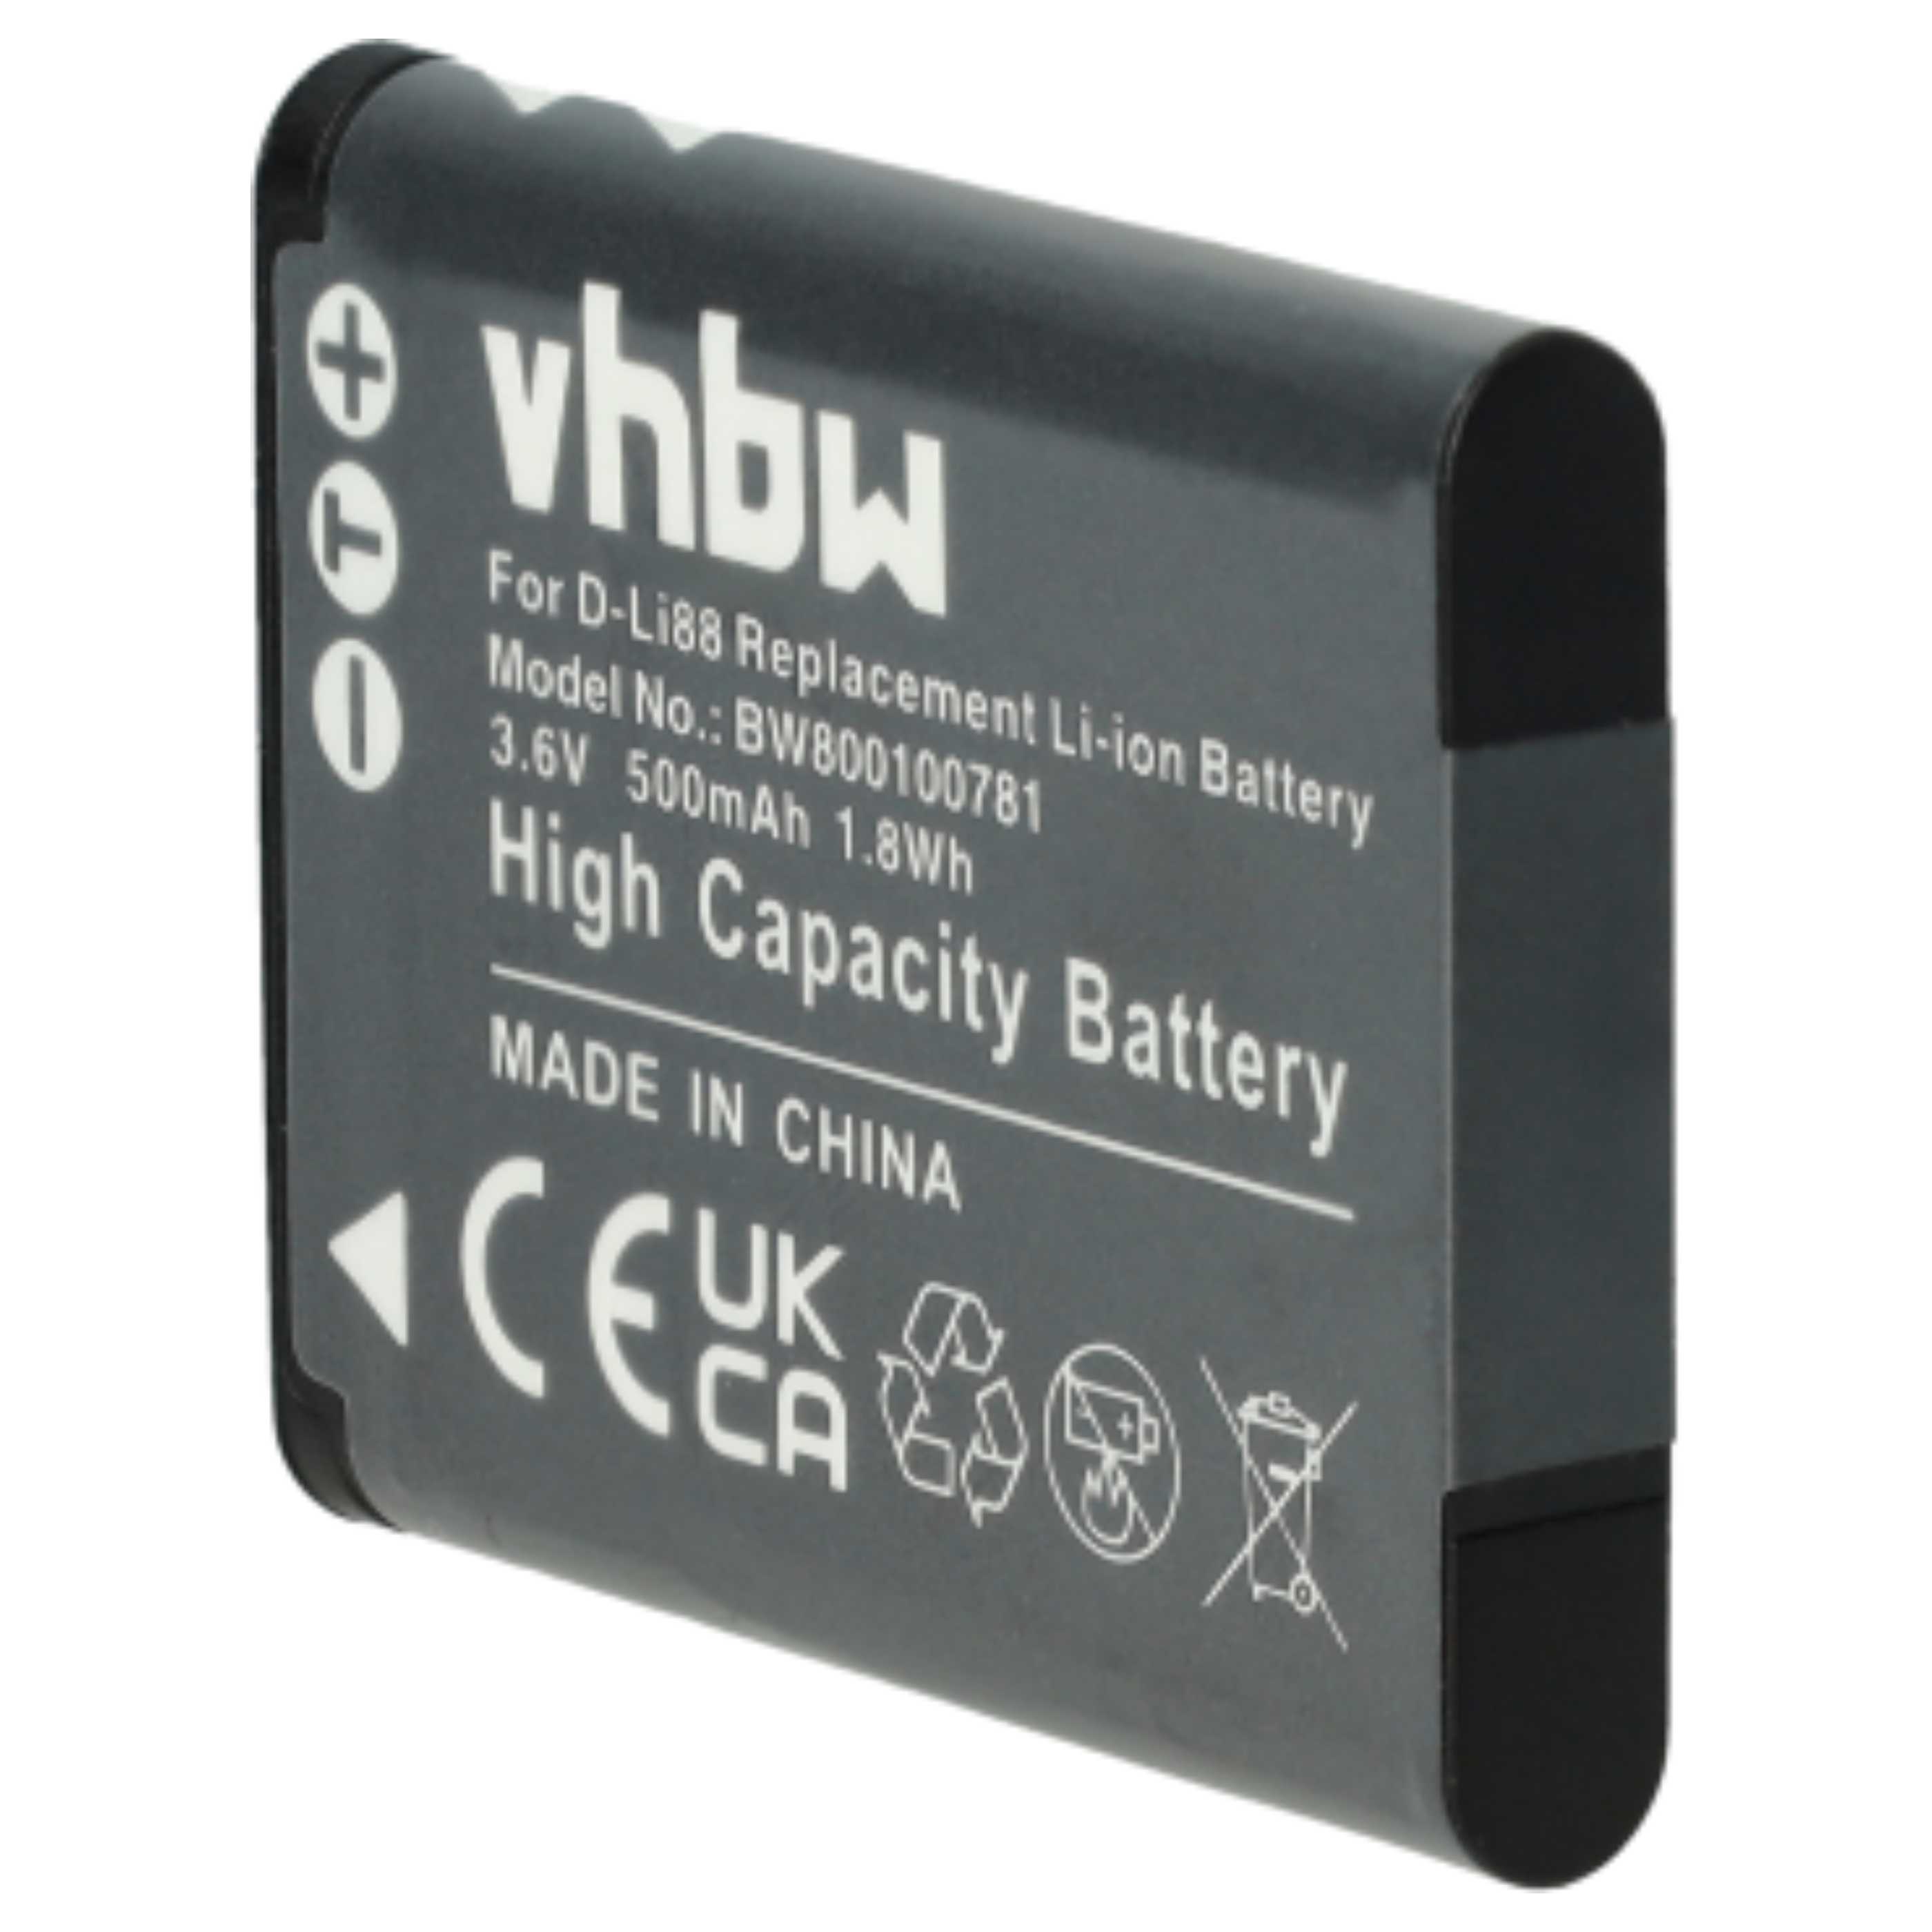 Battery Replacement for Panasonic VW-VBX070E, VW-VBX070 - 500mAh, 3.6V, Li-Ion